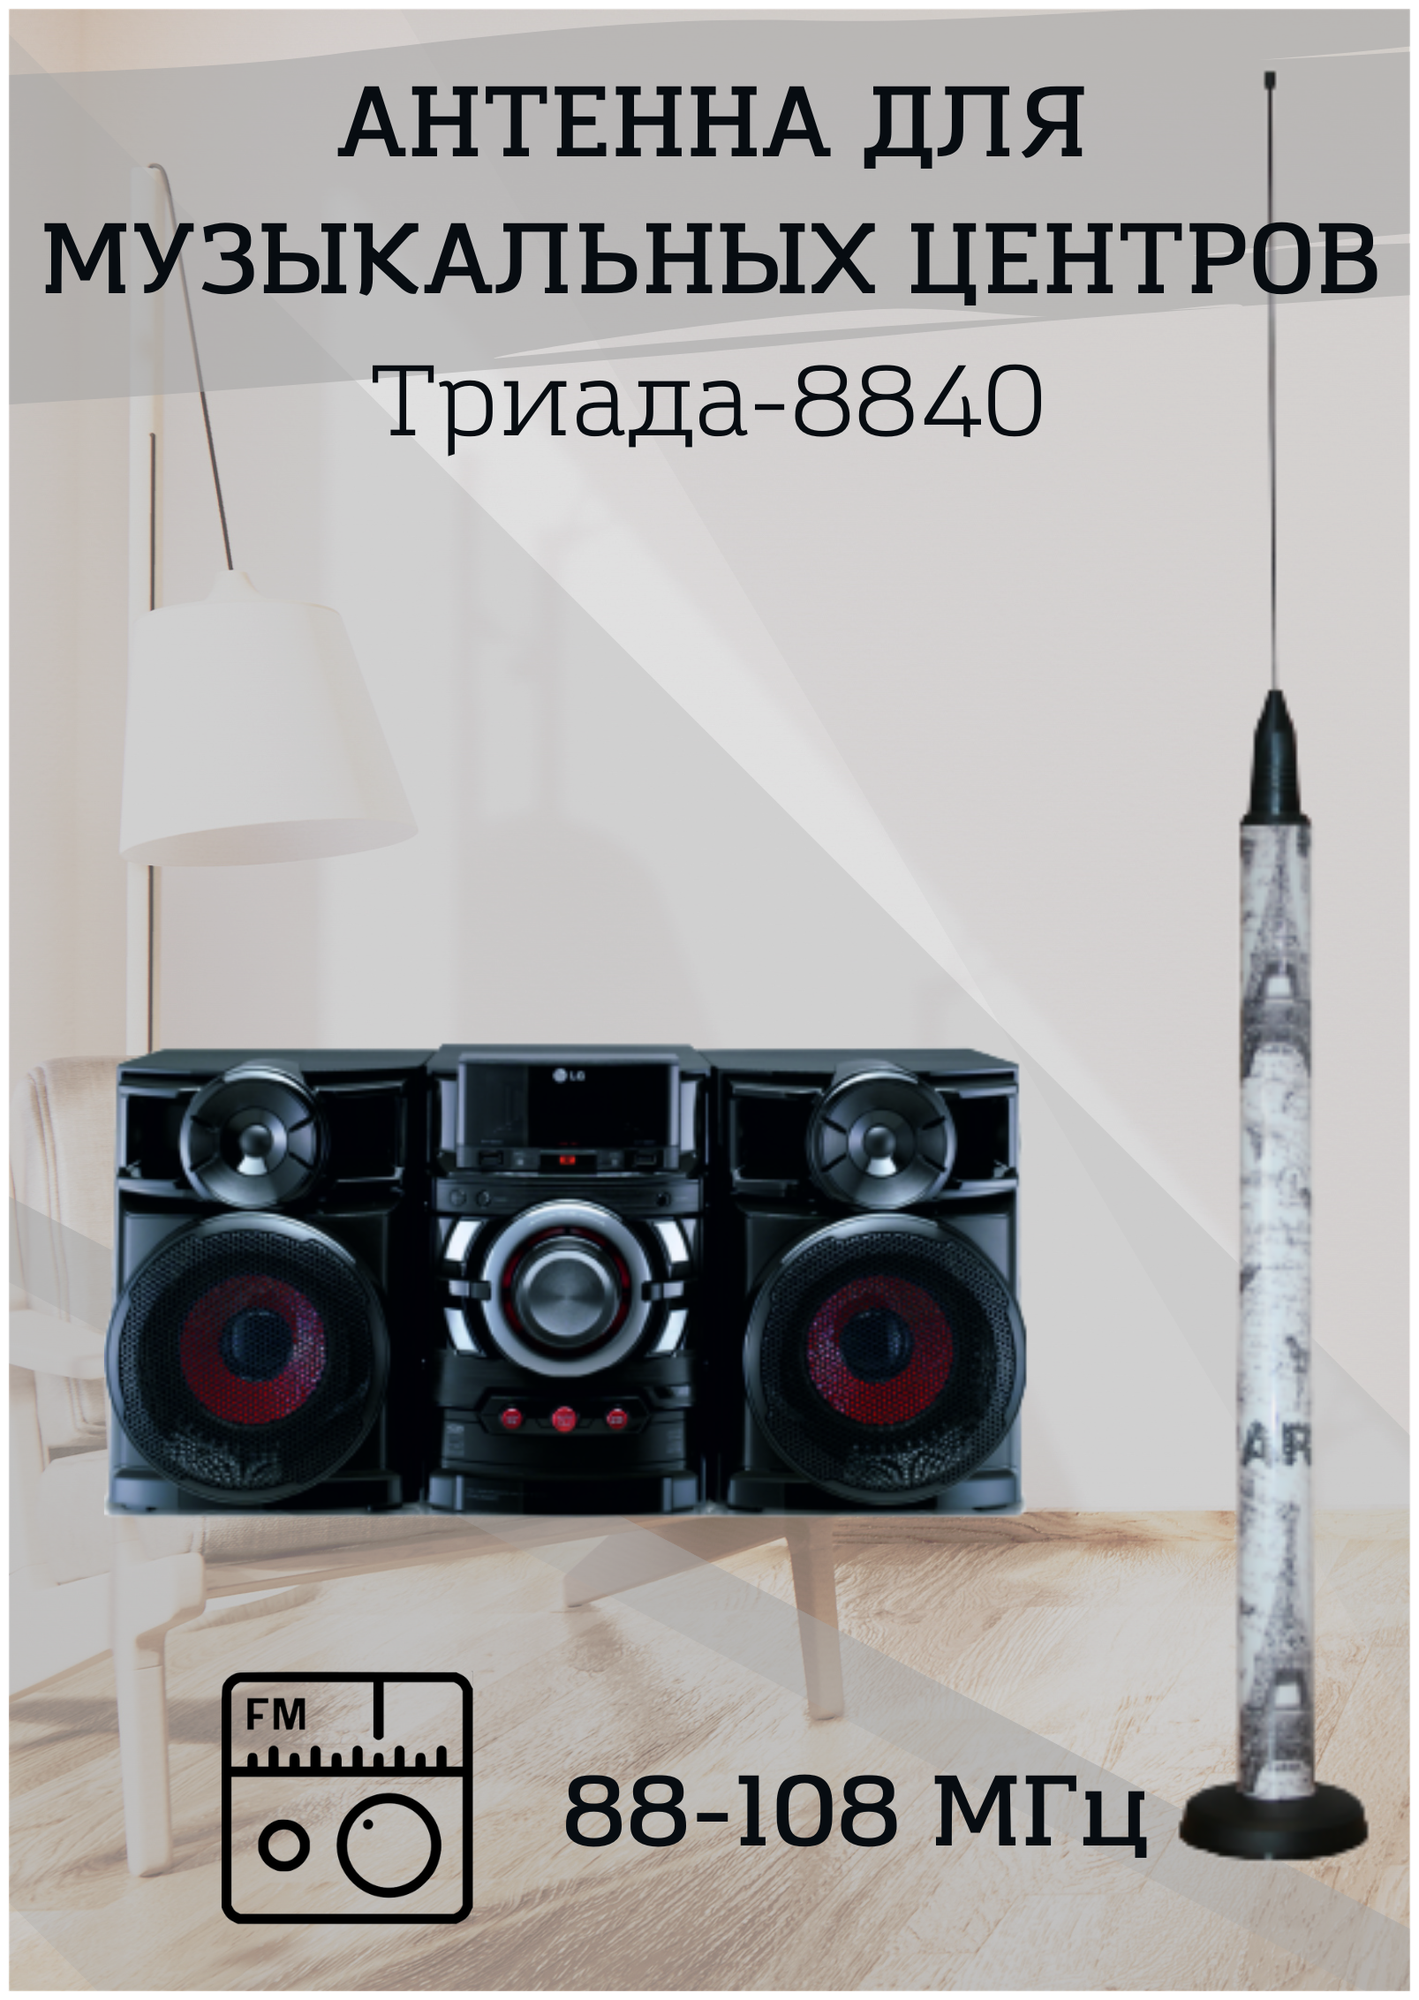 Антенна-усилитель Триада-8840 для музыкальных центров FM, усиление - 6 дБ, круговая направленность, комнатная, длина кабеля 3 м.